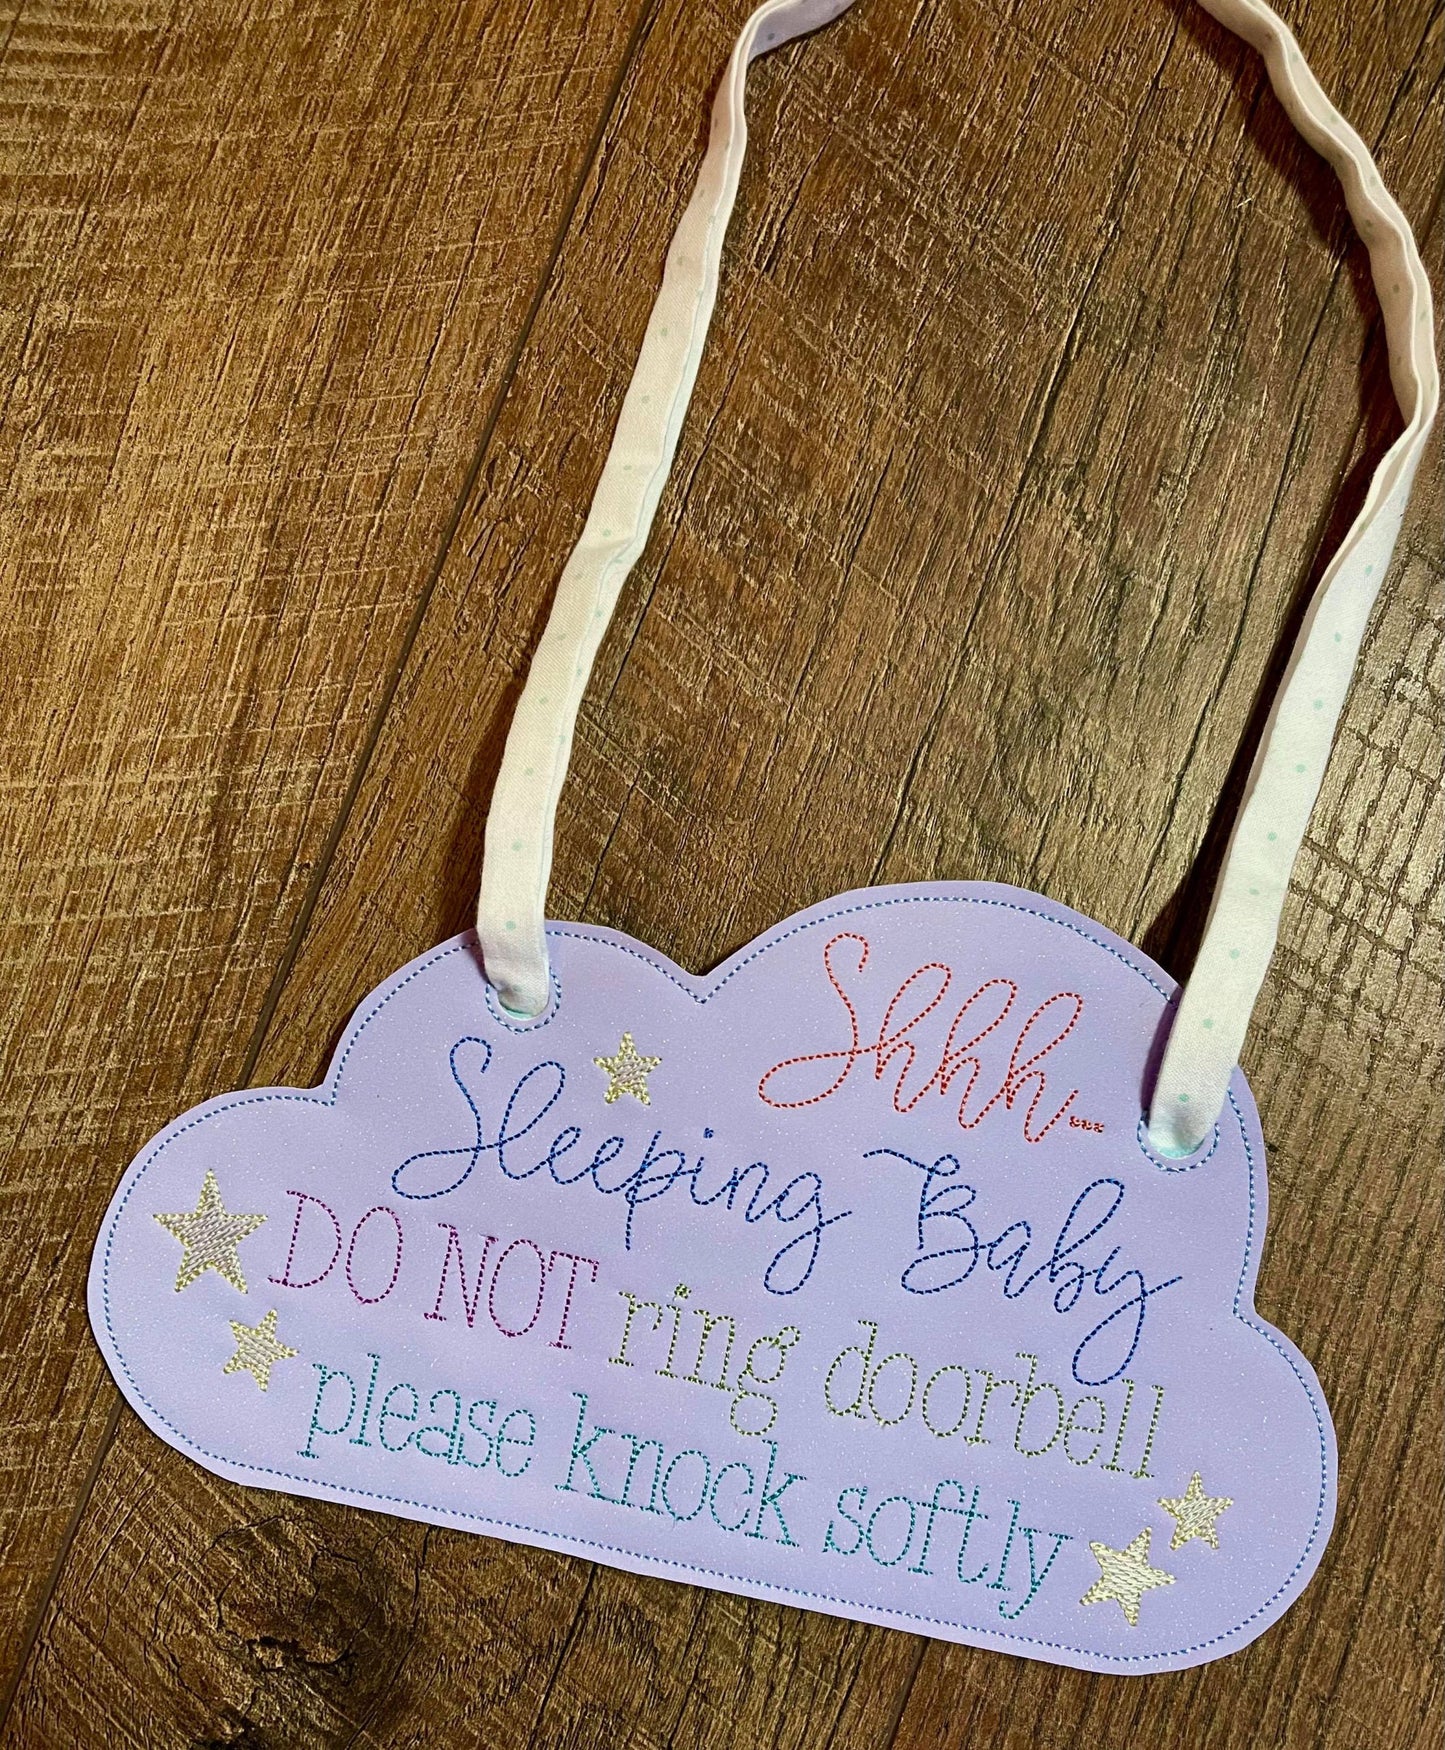 Sleeping Baby Door - 3 sizes - Digital Embroidery Design